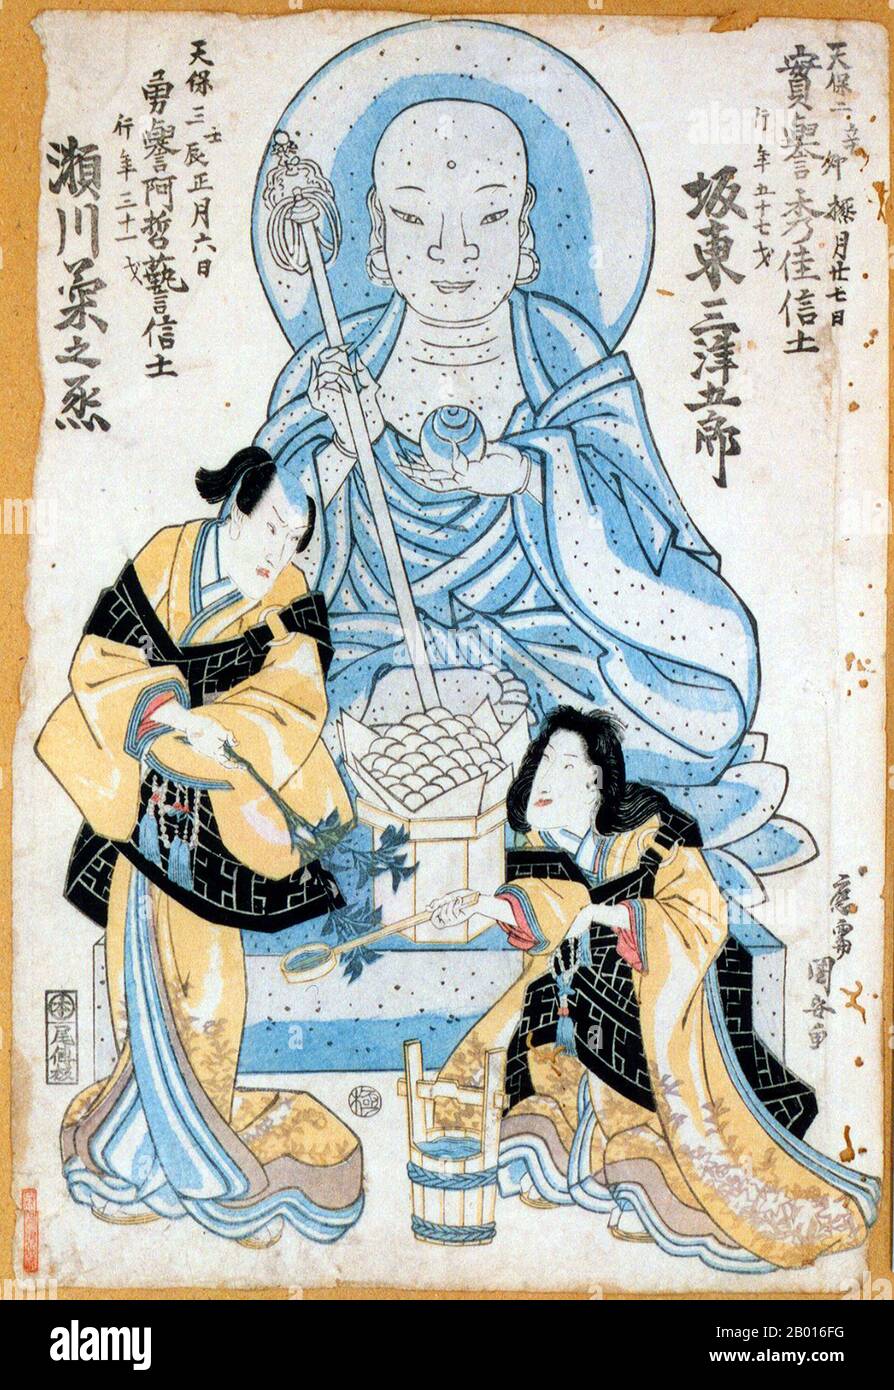 Japón: Devotos budistas. Ukiyo-e grabado en madera por Utagawa Kuniyasu (1794 - 1 de agosto de 1832), a principios del siglo 19th. Utagawa Kuniyasu, nacido Yasugoro y también conocido por Ipposai y Nishikawa Yasutobu, fue un artista japonés de la escuela de Utagawa. Fue enseñado por Utagawa Toyokuni, e ilustró más de cien libros a lo largo de su carrera, así como cientos de grabados independientes de bellezas (bijin-ga) y actores Kabuki (yakusha-e). Foto de stock